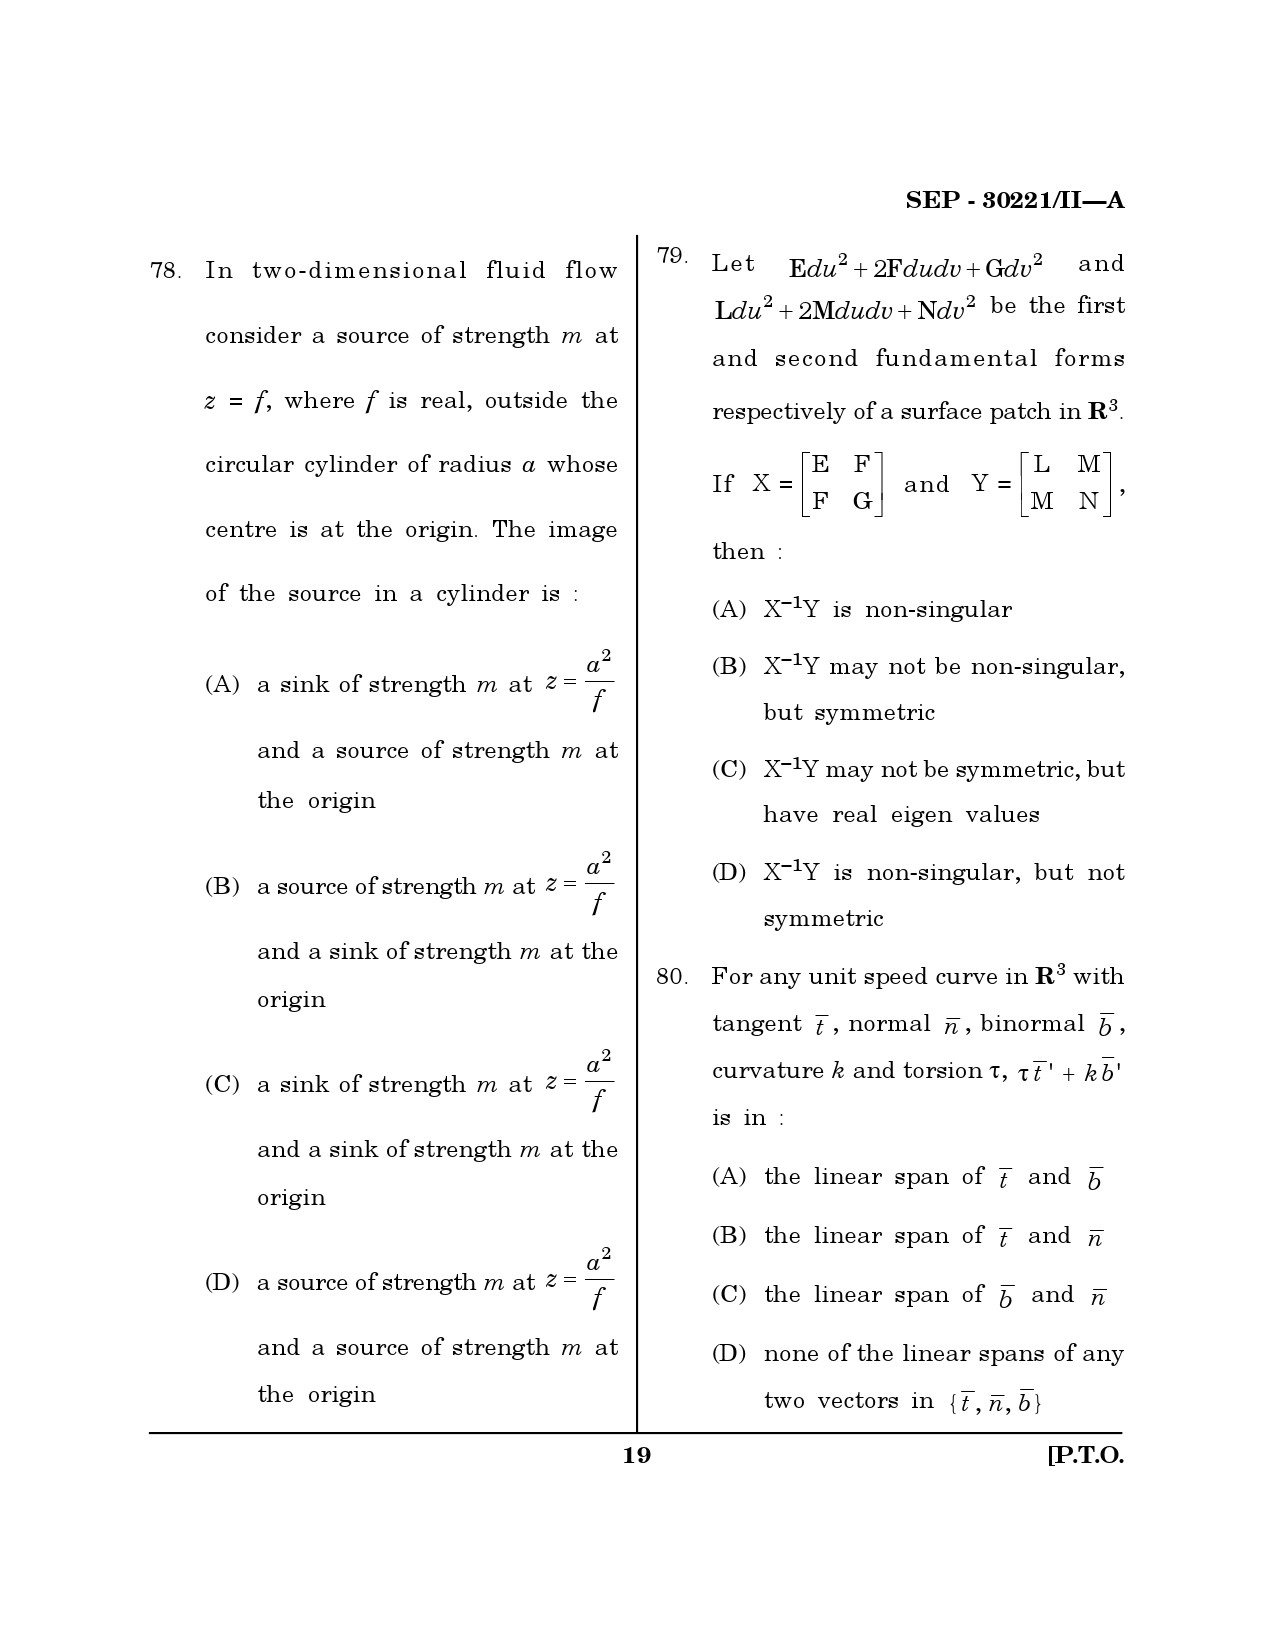 Maharashtra SET Mathematical Sciences Exam Question Paper September 2021 18